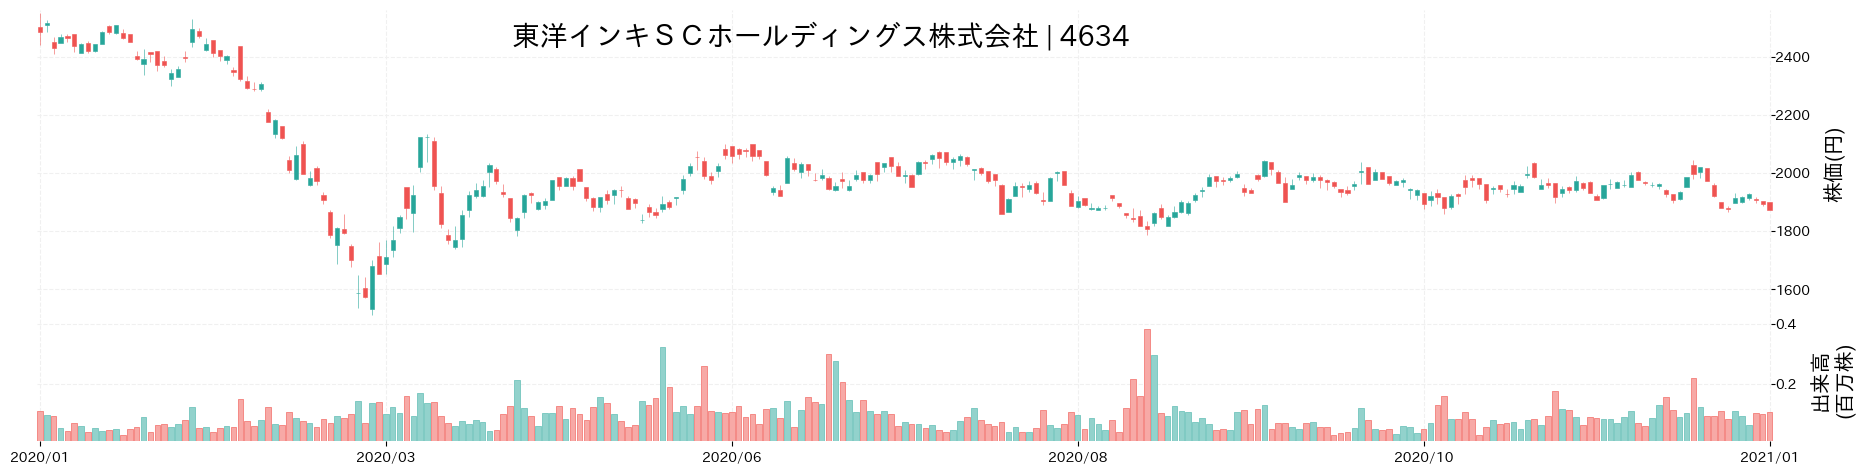 東洋インキSCホールディングスの株価推移(2020)